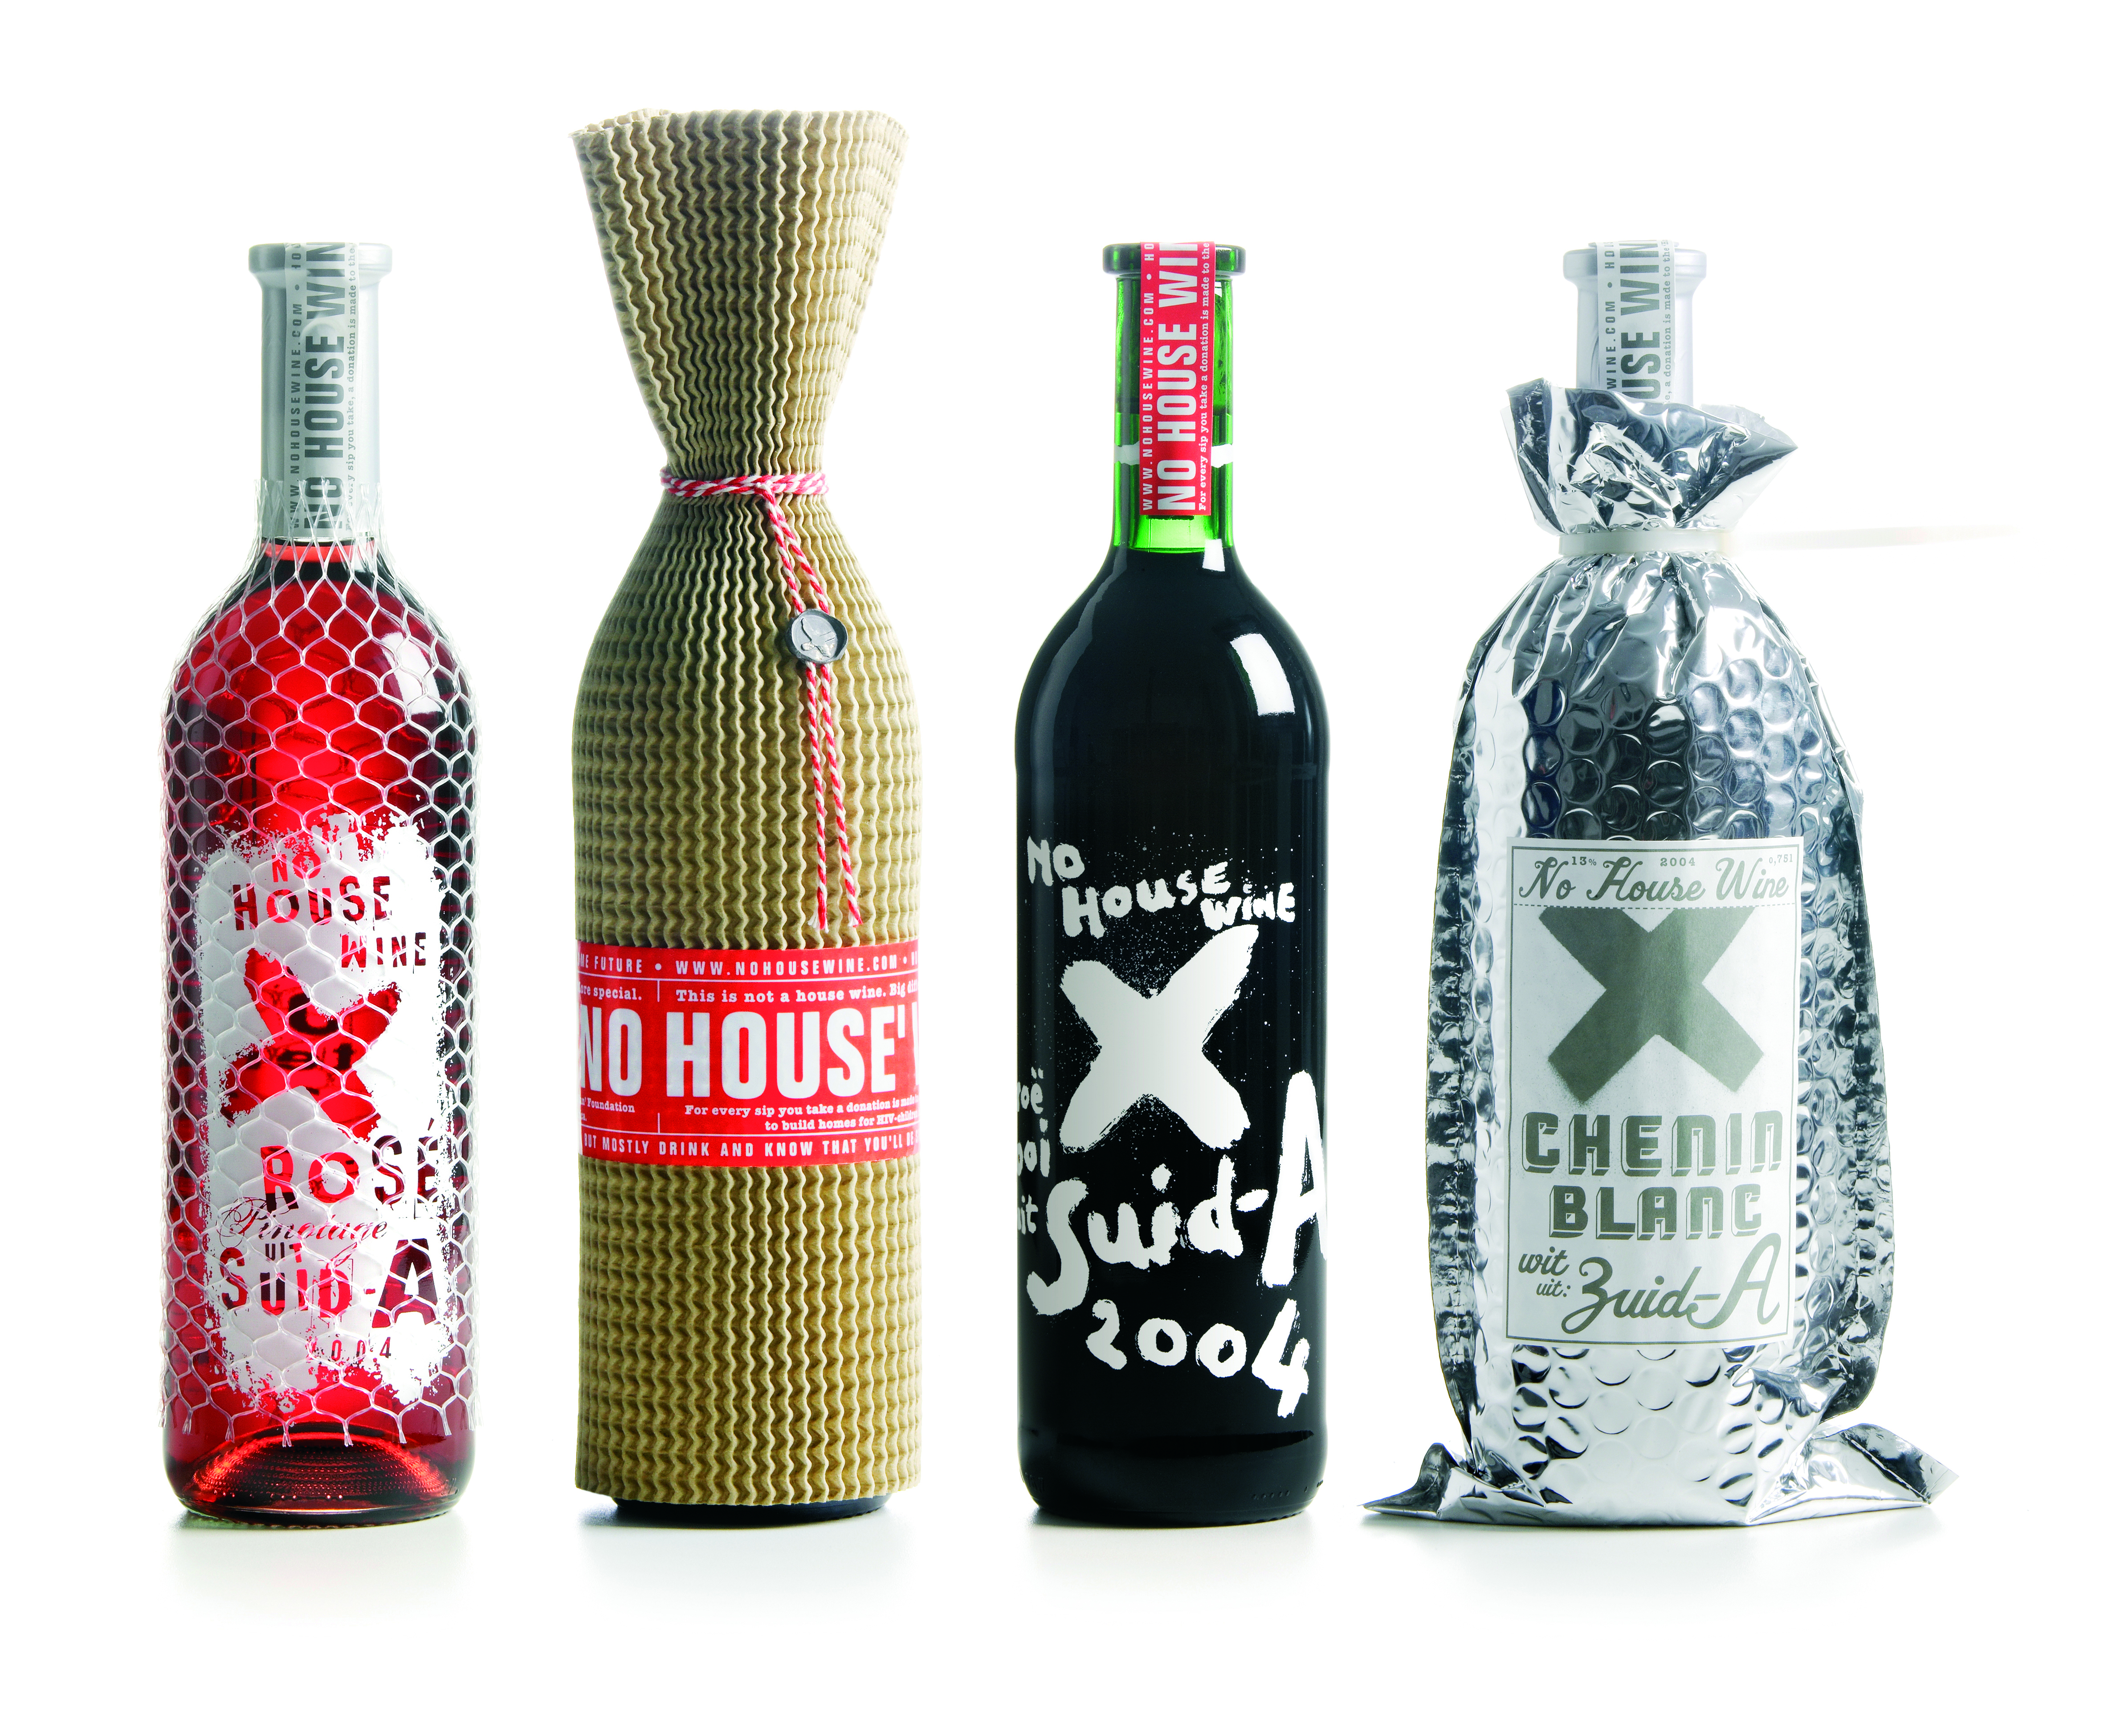 Studio Boot  No House Wine, design de bouteilles de vin, direction artistique, réalisation graphique et illustration Edwin Vollebergh, 7x30,4cm de 2008 à 2013. © Studio Boot, Pays-Bas 